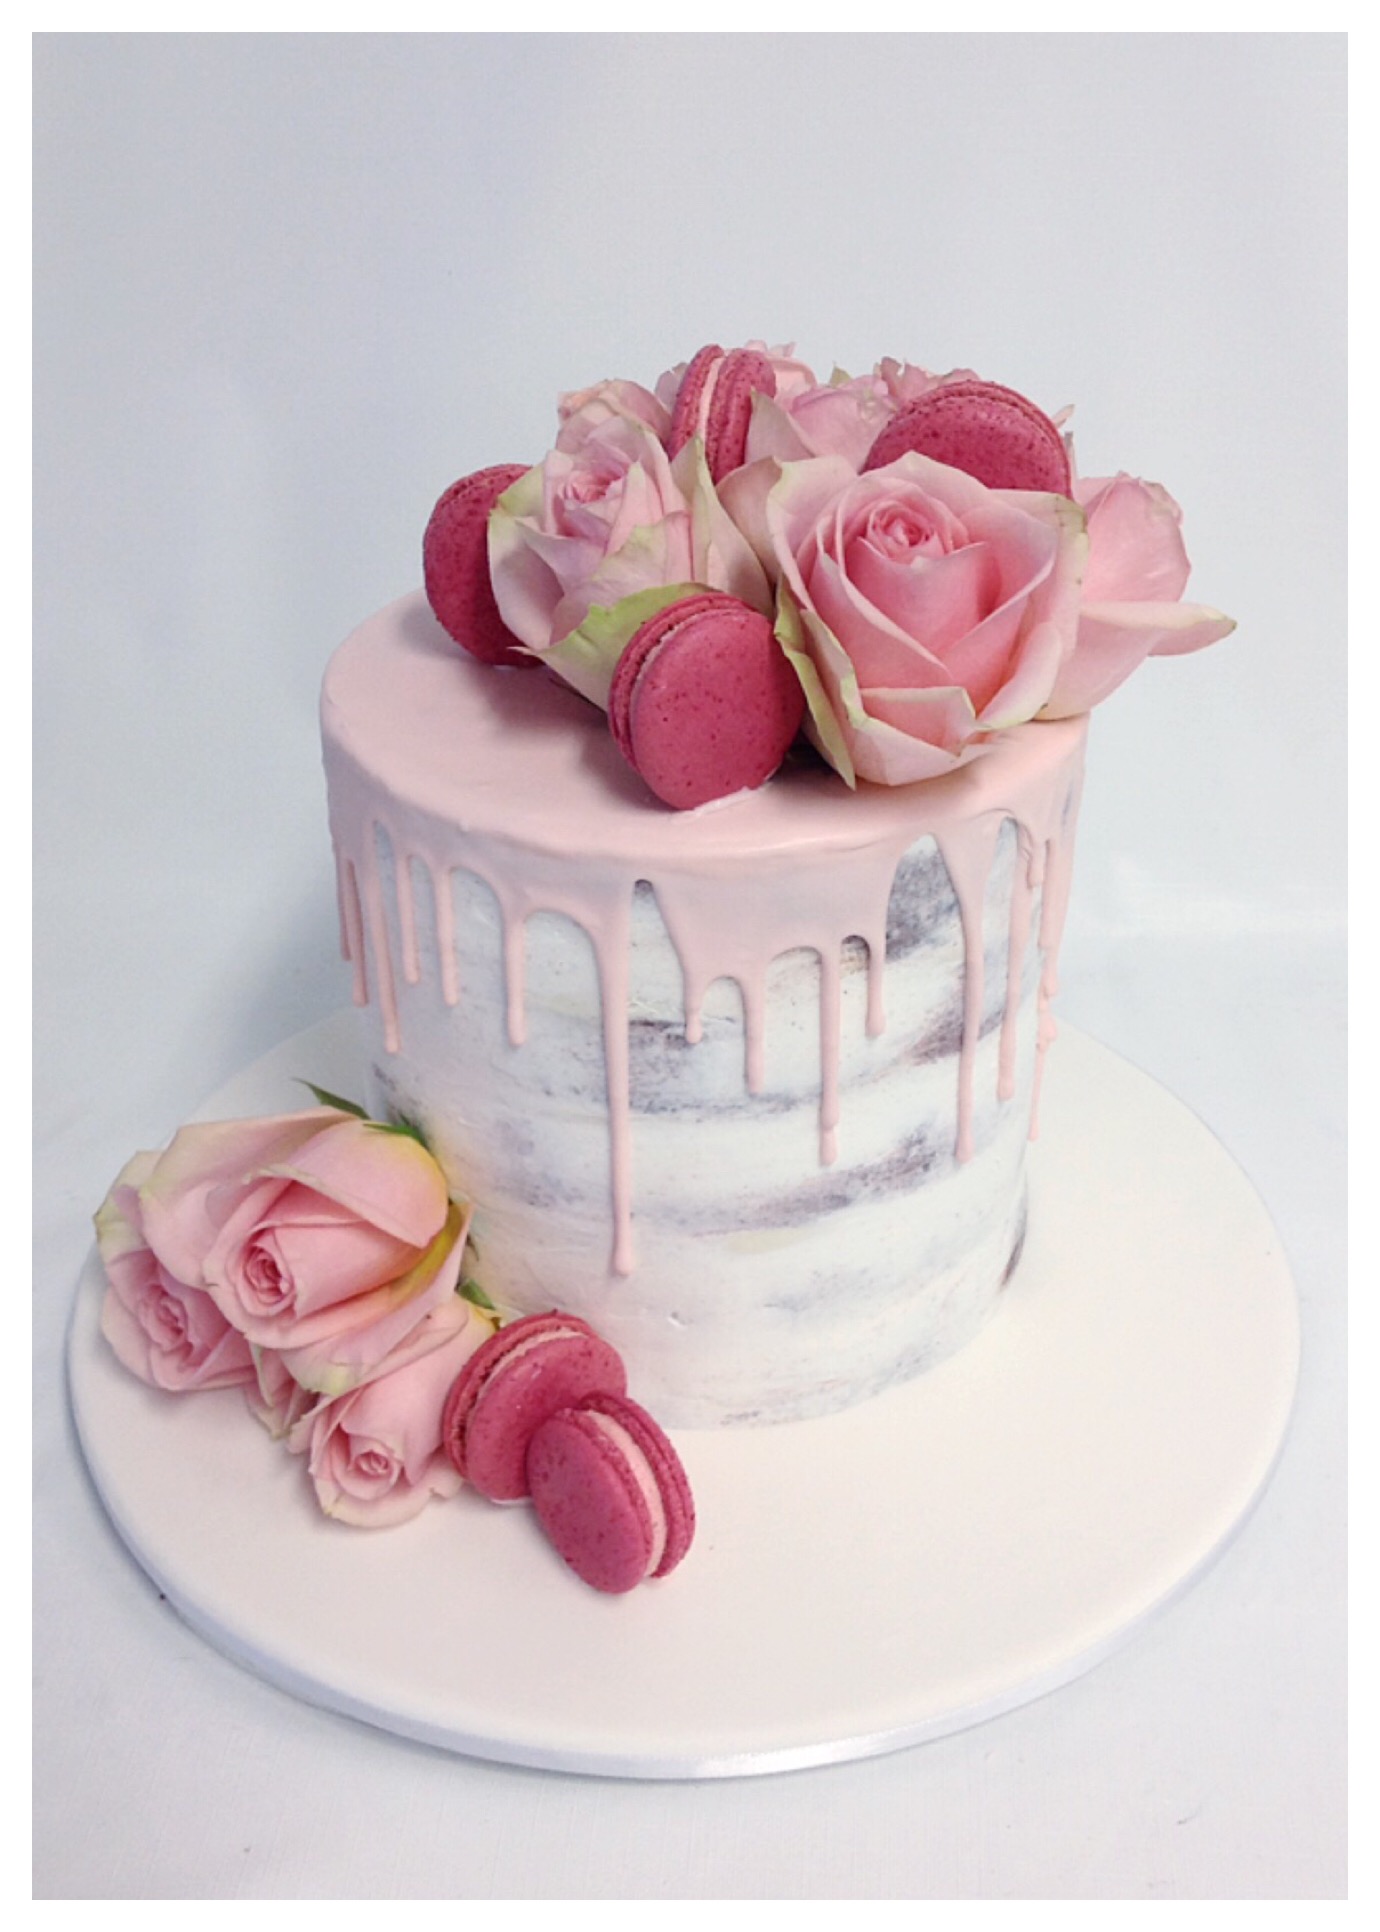 C337 | Mezzapica - Cannoli, Birthday & Wedding Cakes